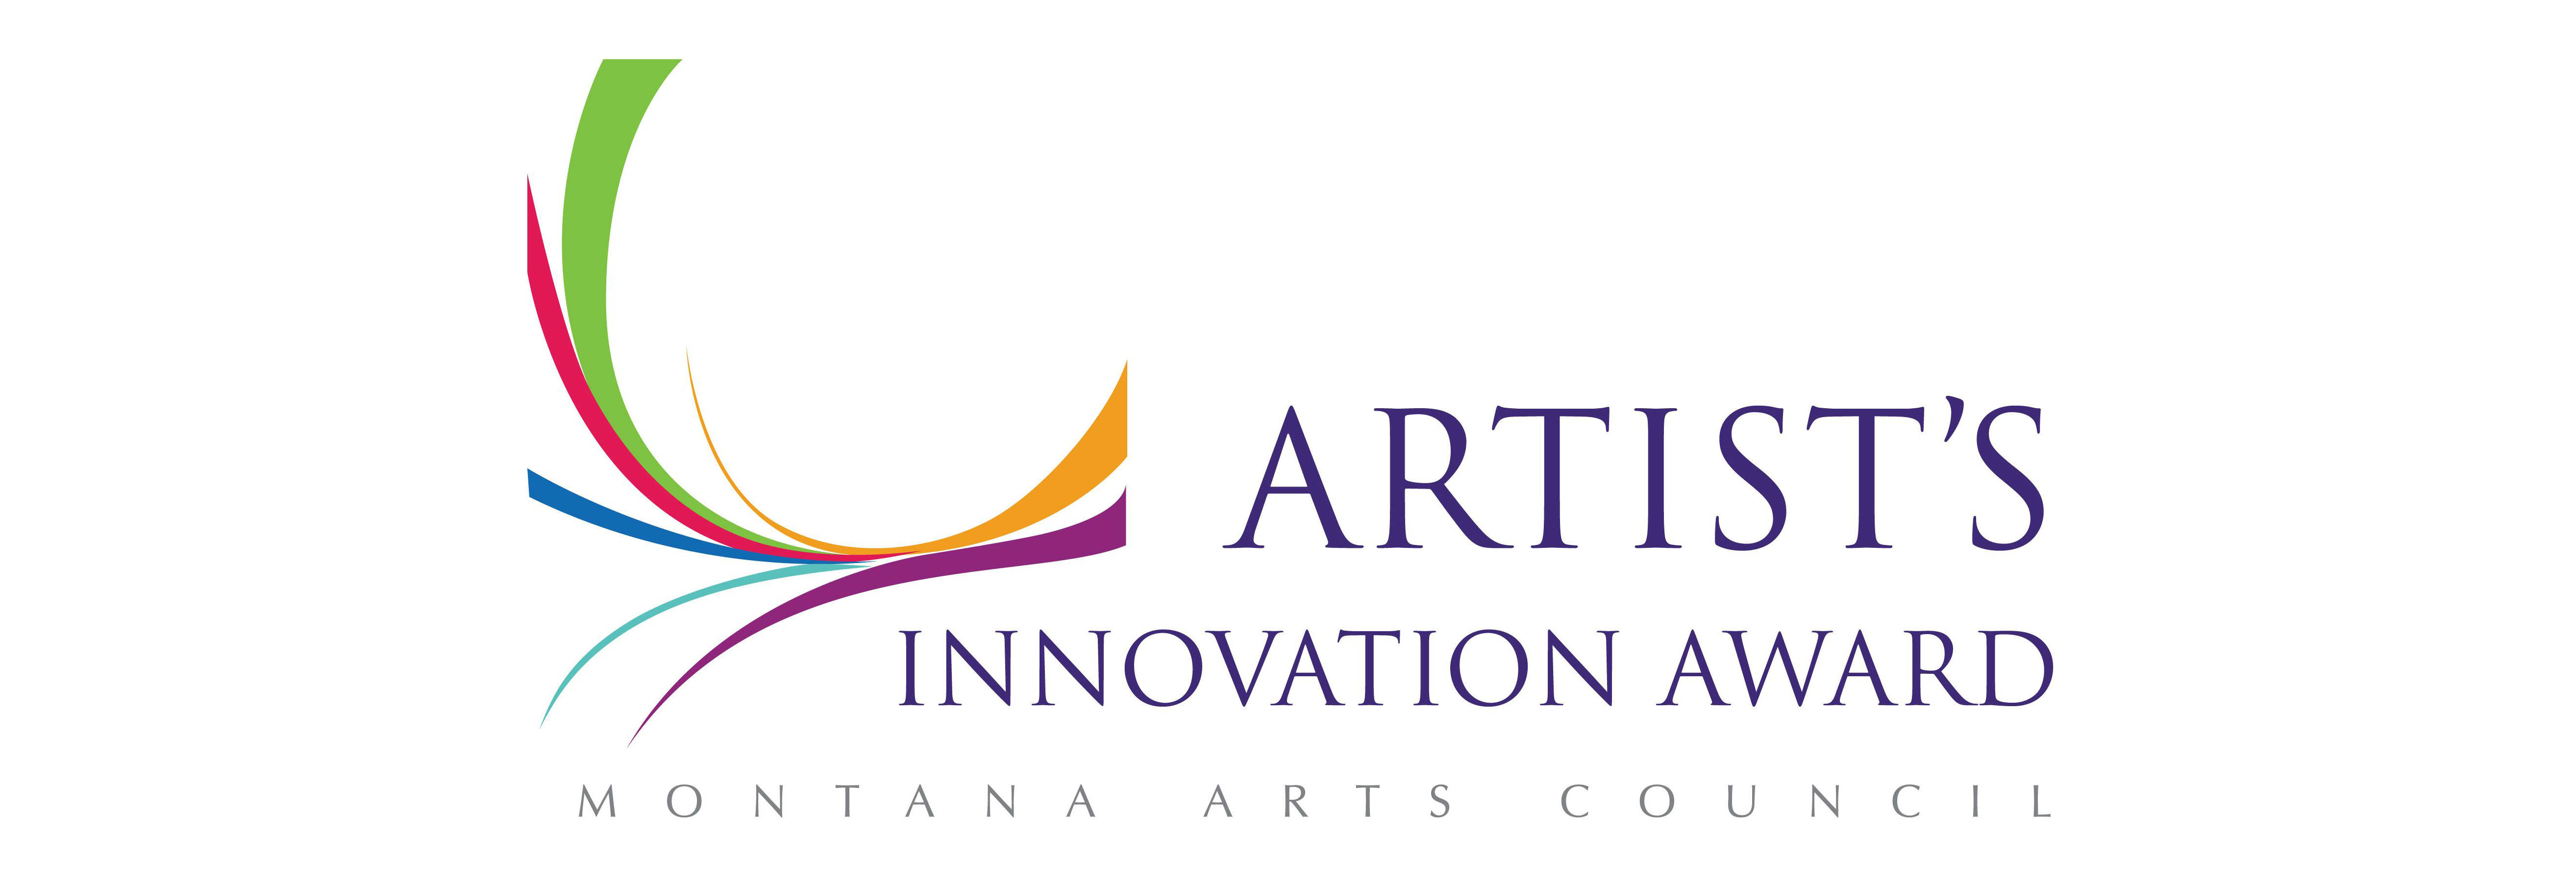 Artists Innovation Award